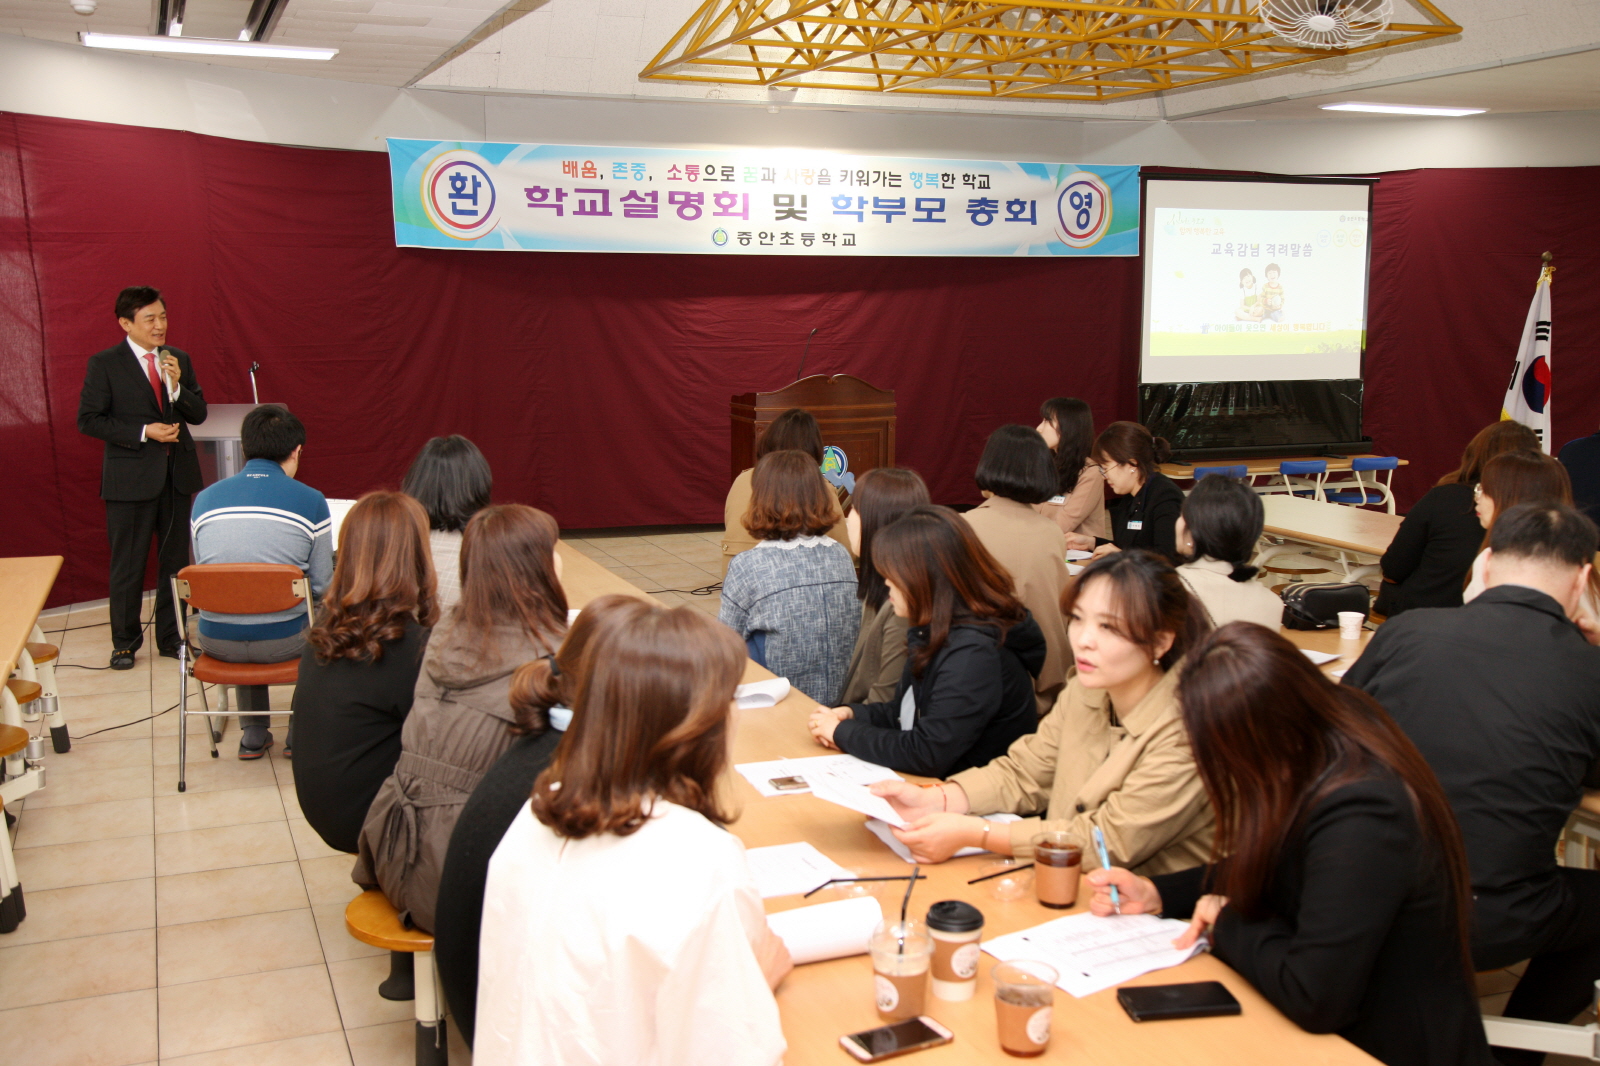 증안초 학교설명회에 참석한 김병우 교육감.JPG